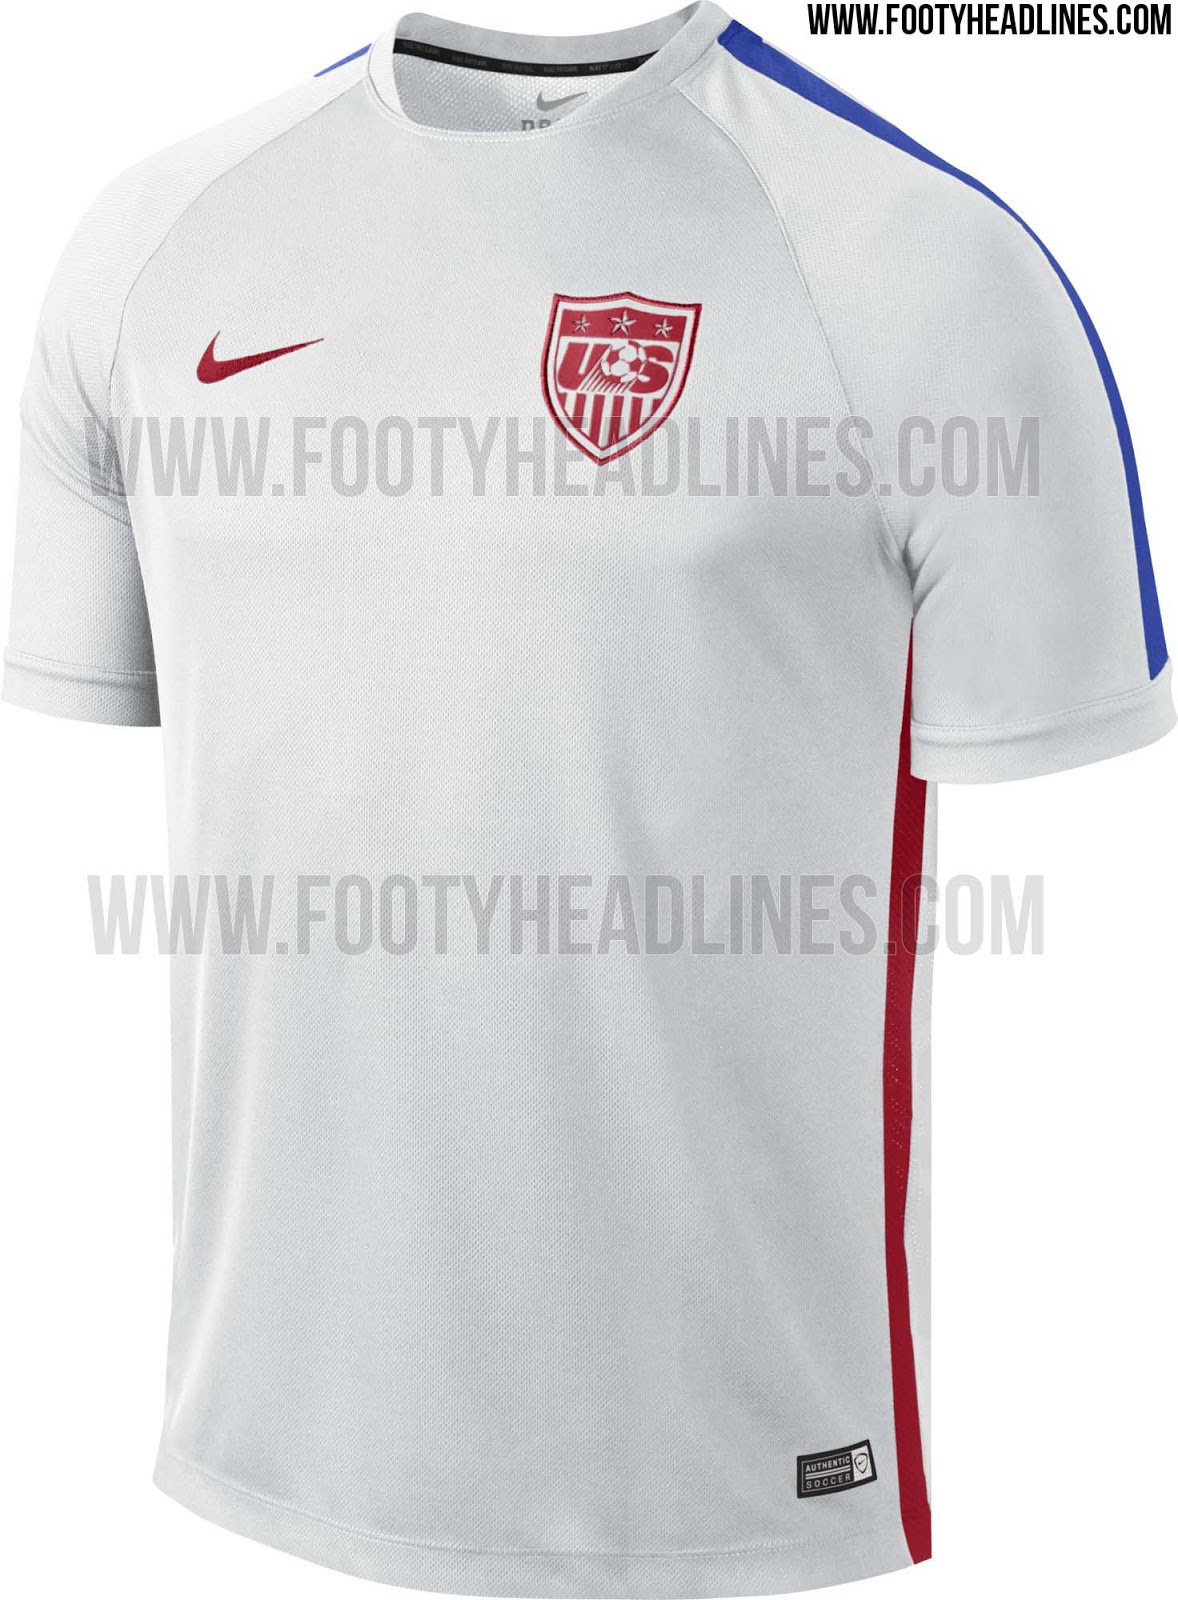 USA-2015-Training-Kit.jpg